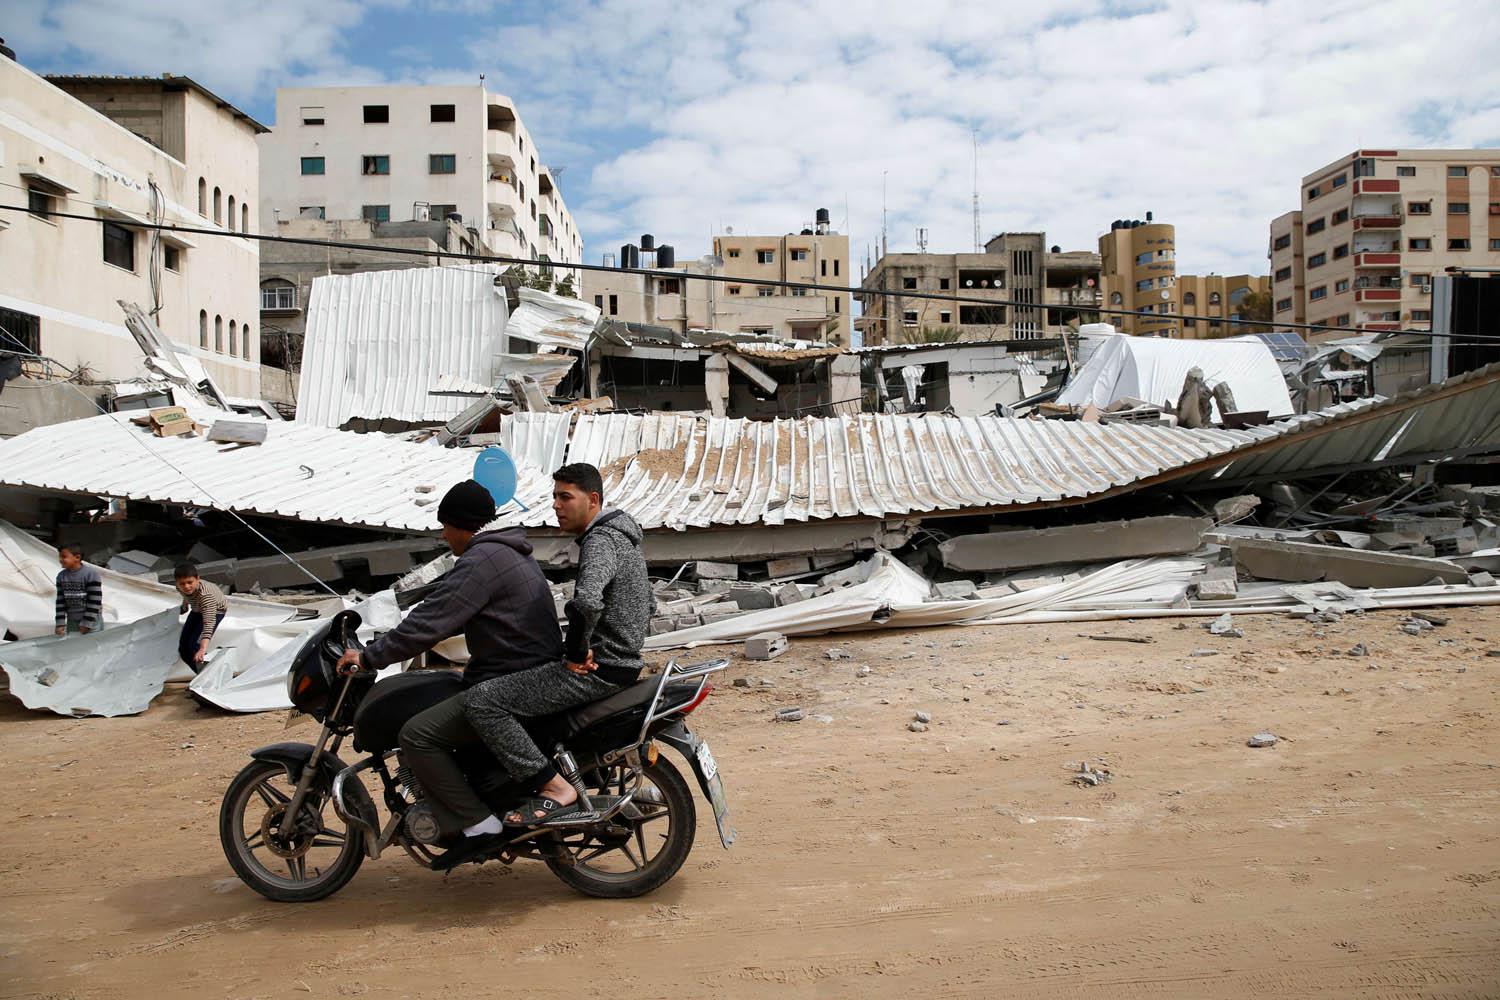 فلسطينيان يمران على دراجة بالقرب من مبنى دمرته اسرائيل بقصف جوي على غزة 